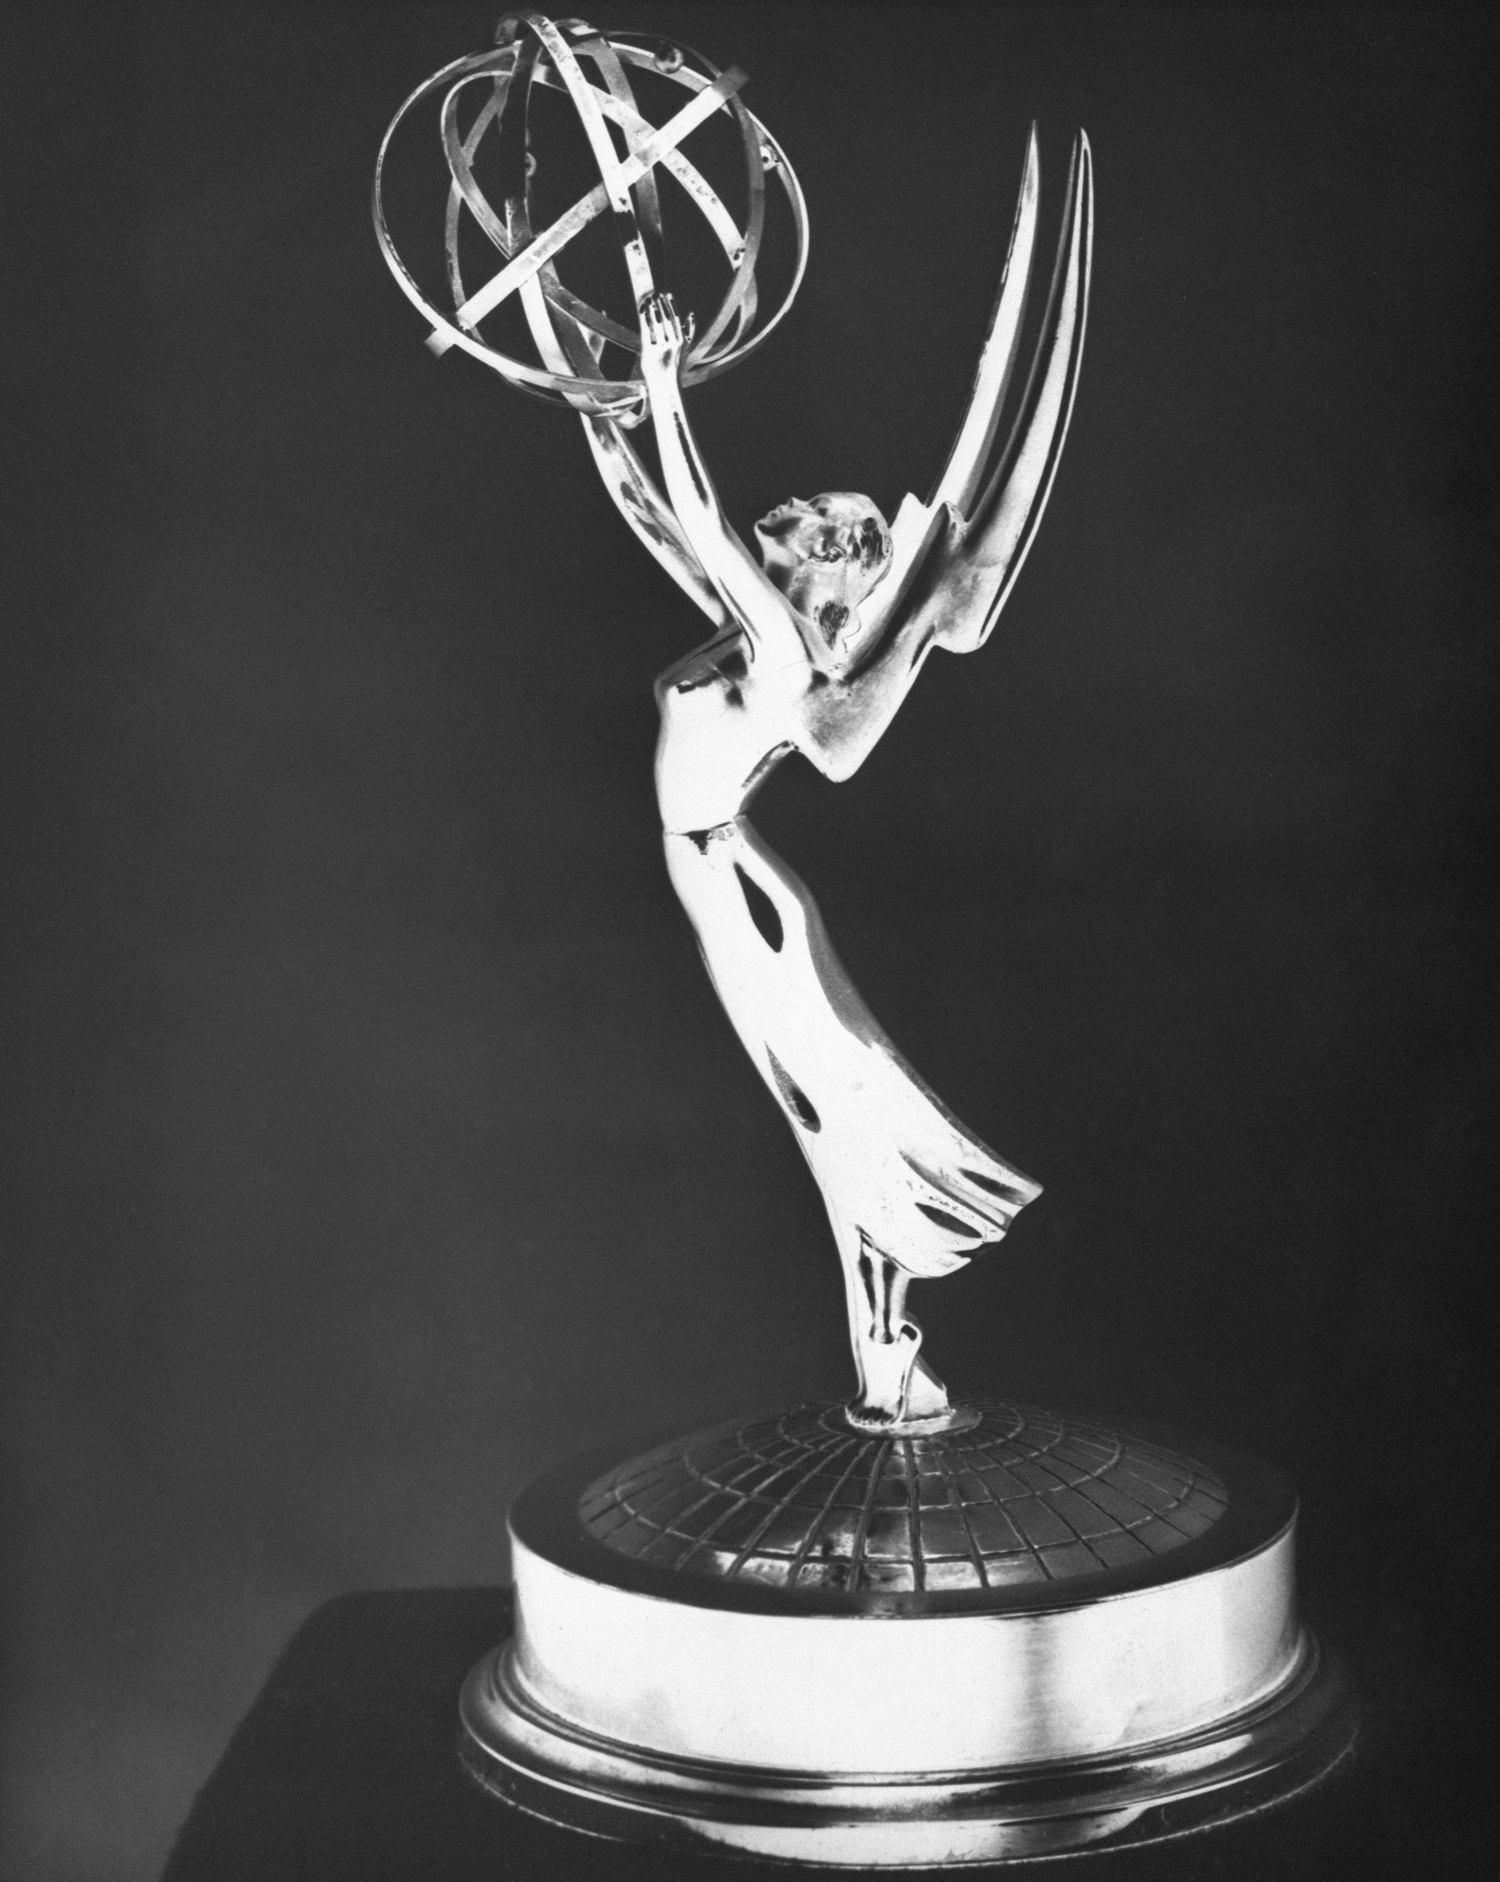 Retró fotók: ilyen volt az Emmy az 1950-es években! 